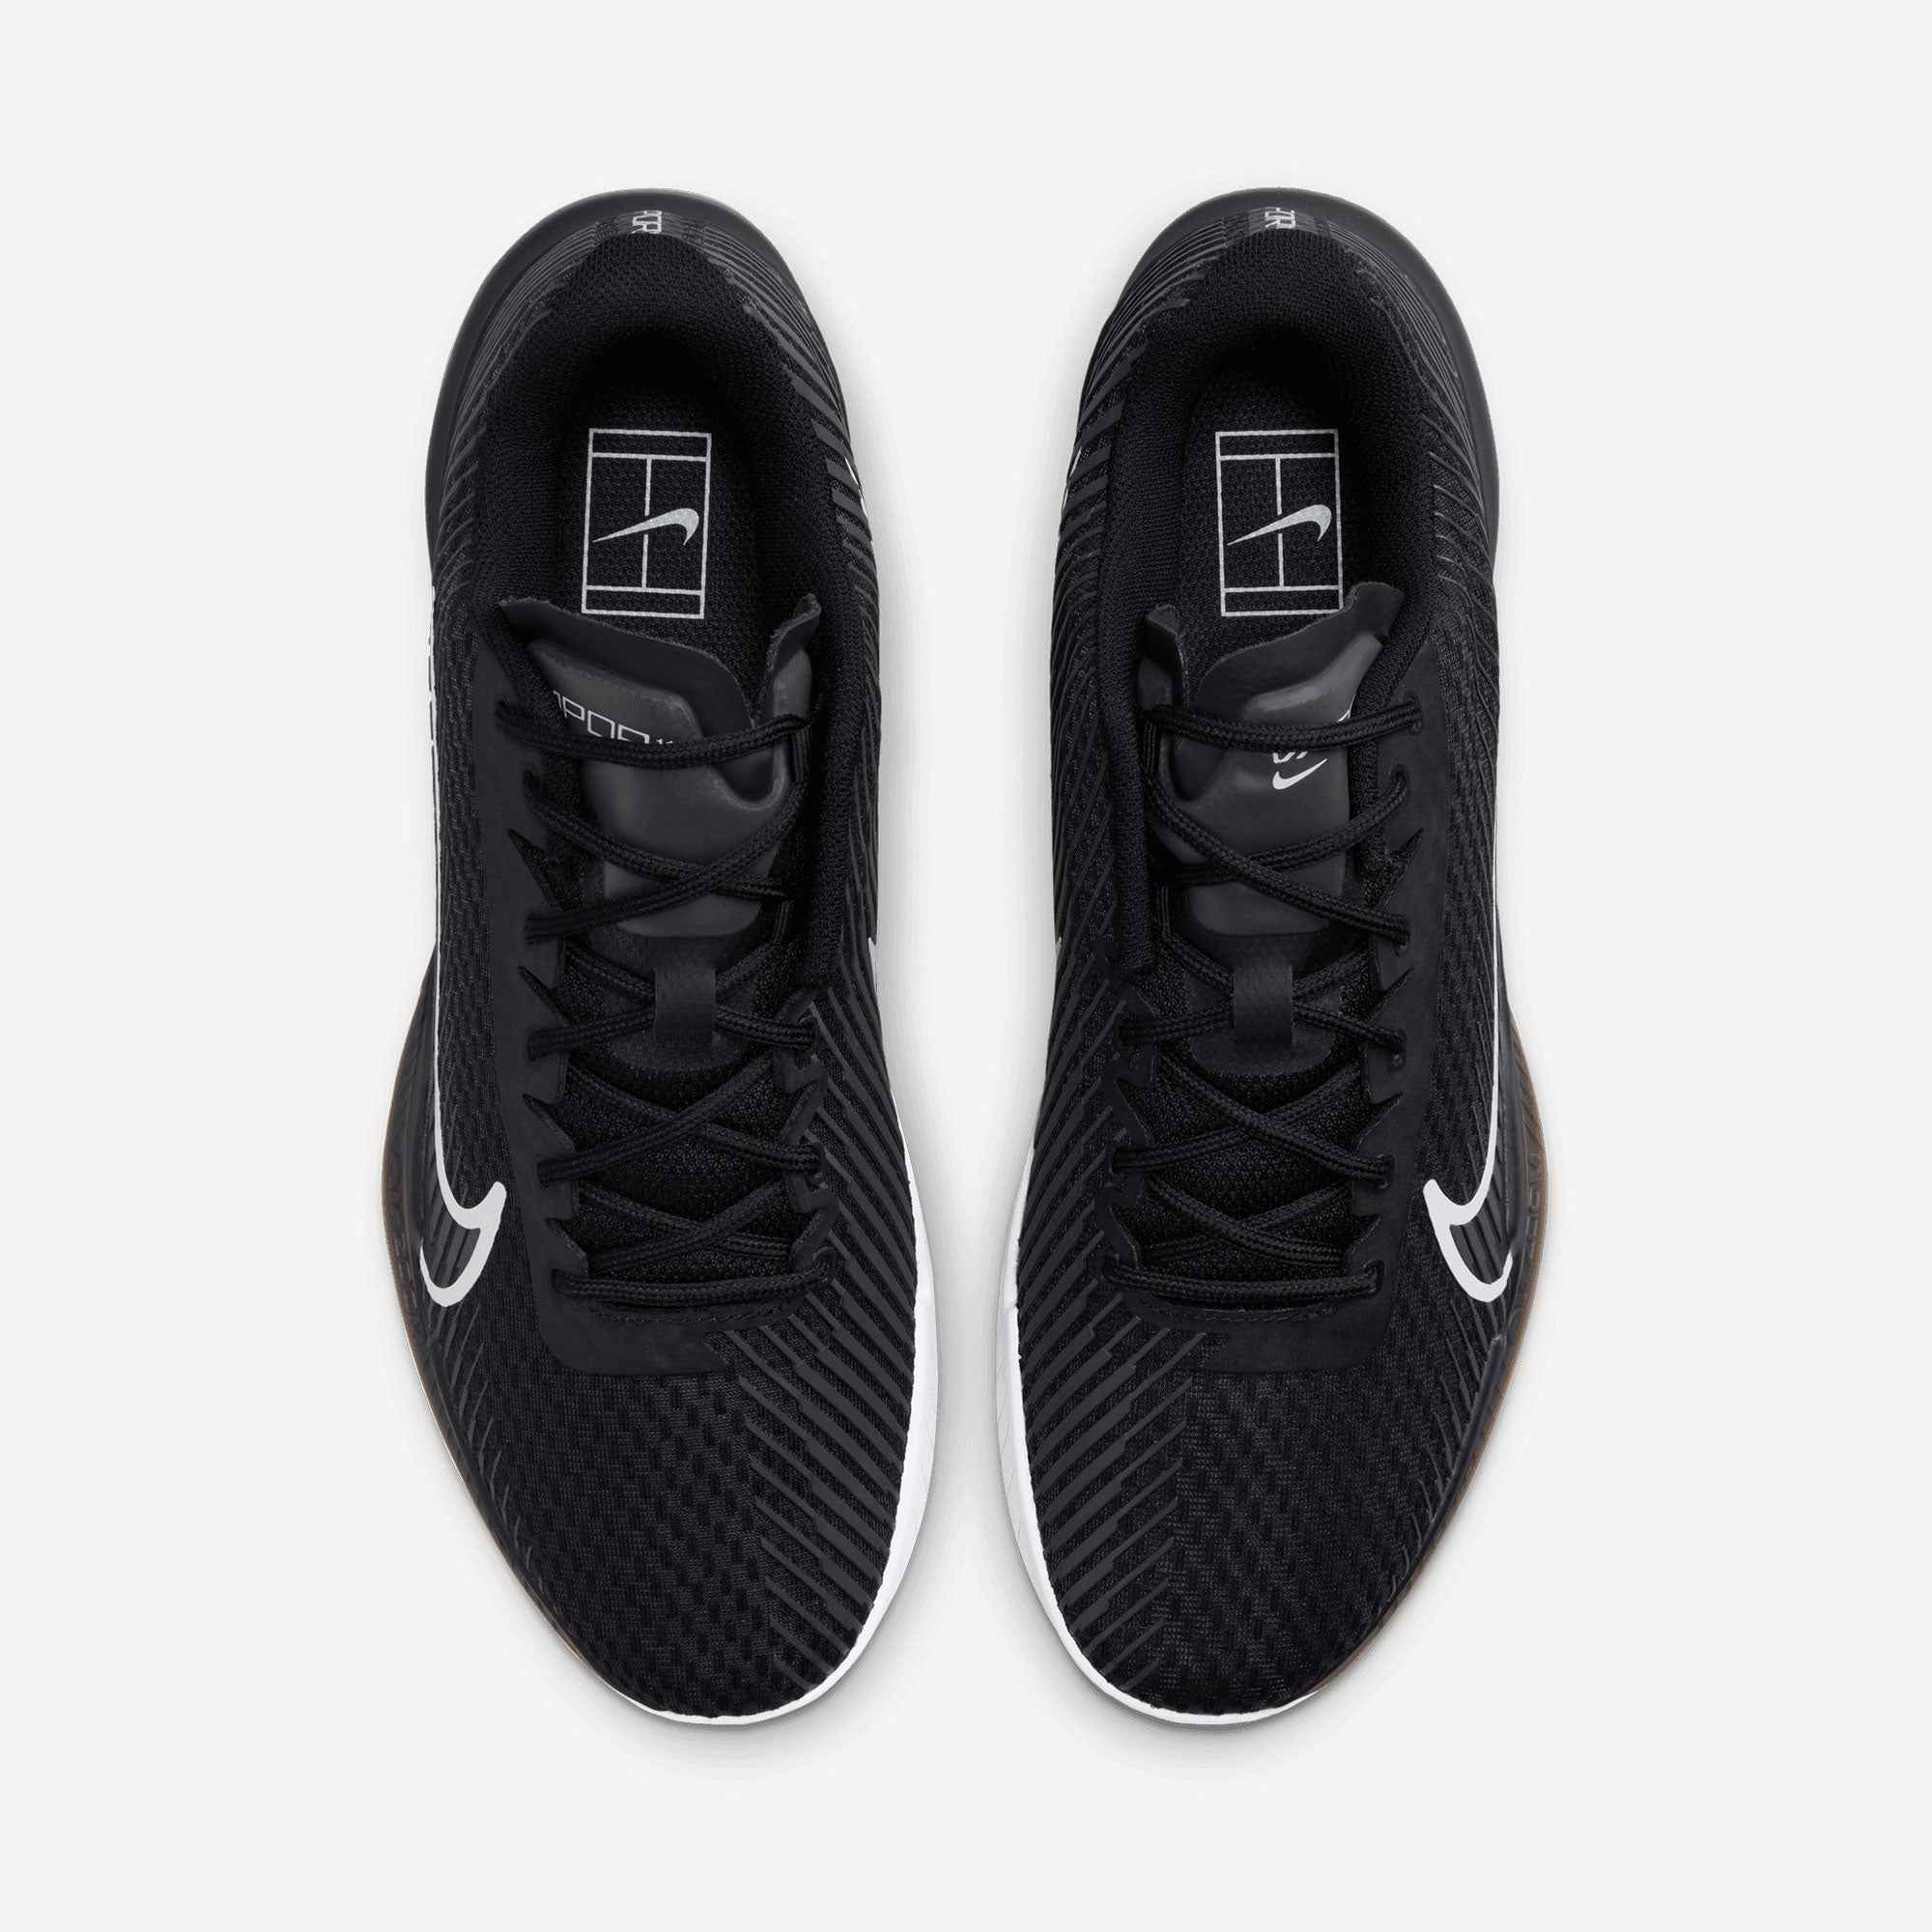 NikeCourt Air Zoom Vapor 11 Men's Hard Court Tennis Shoes Black (6)